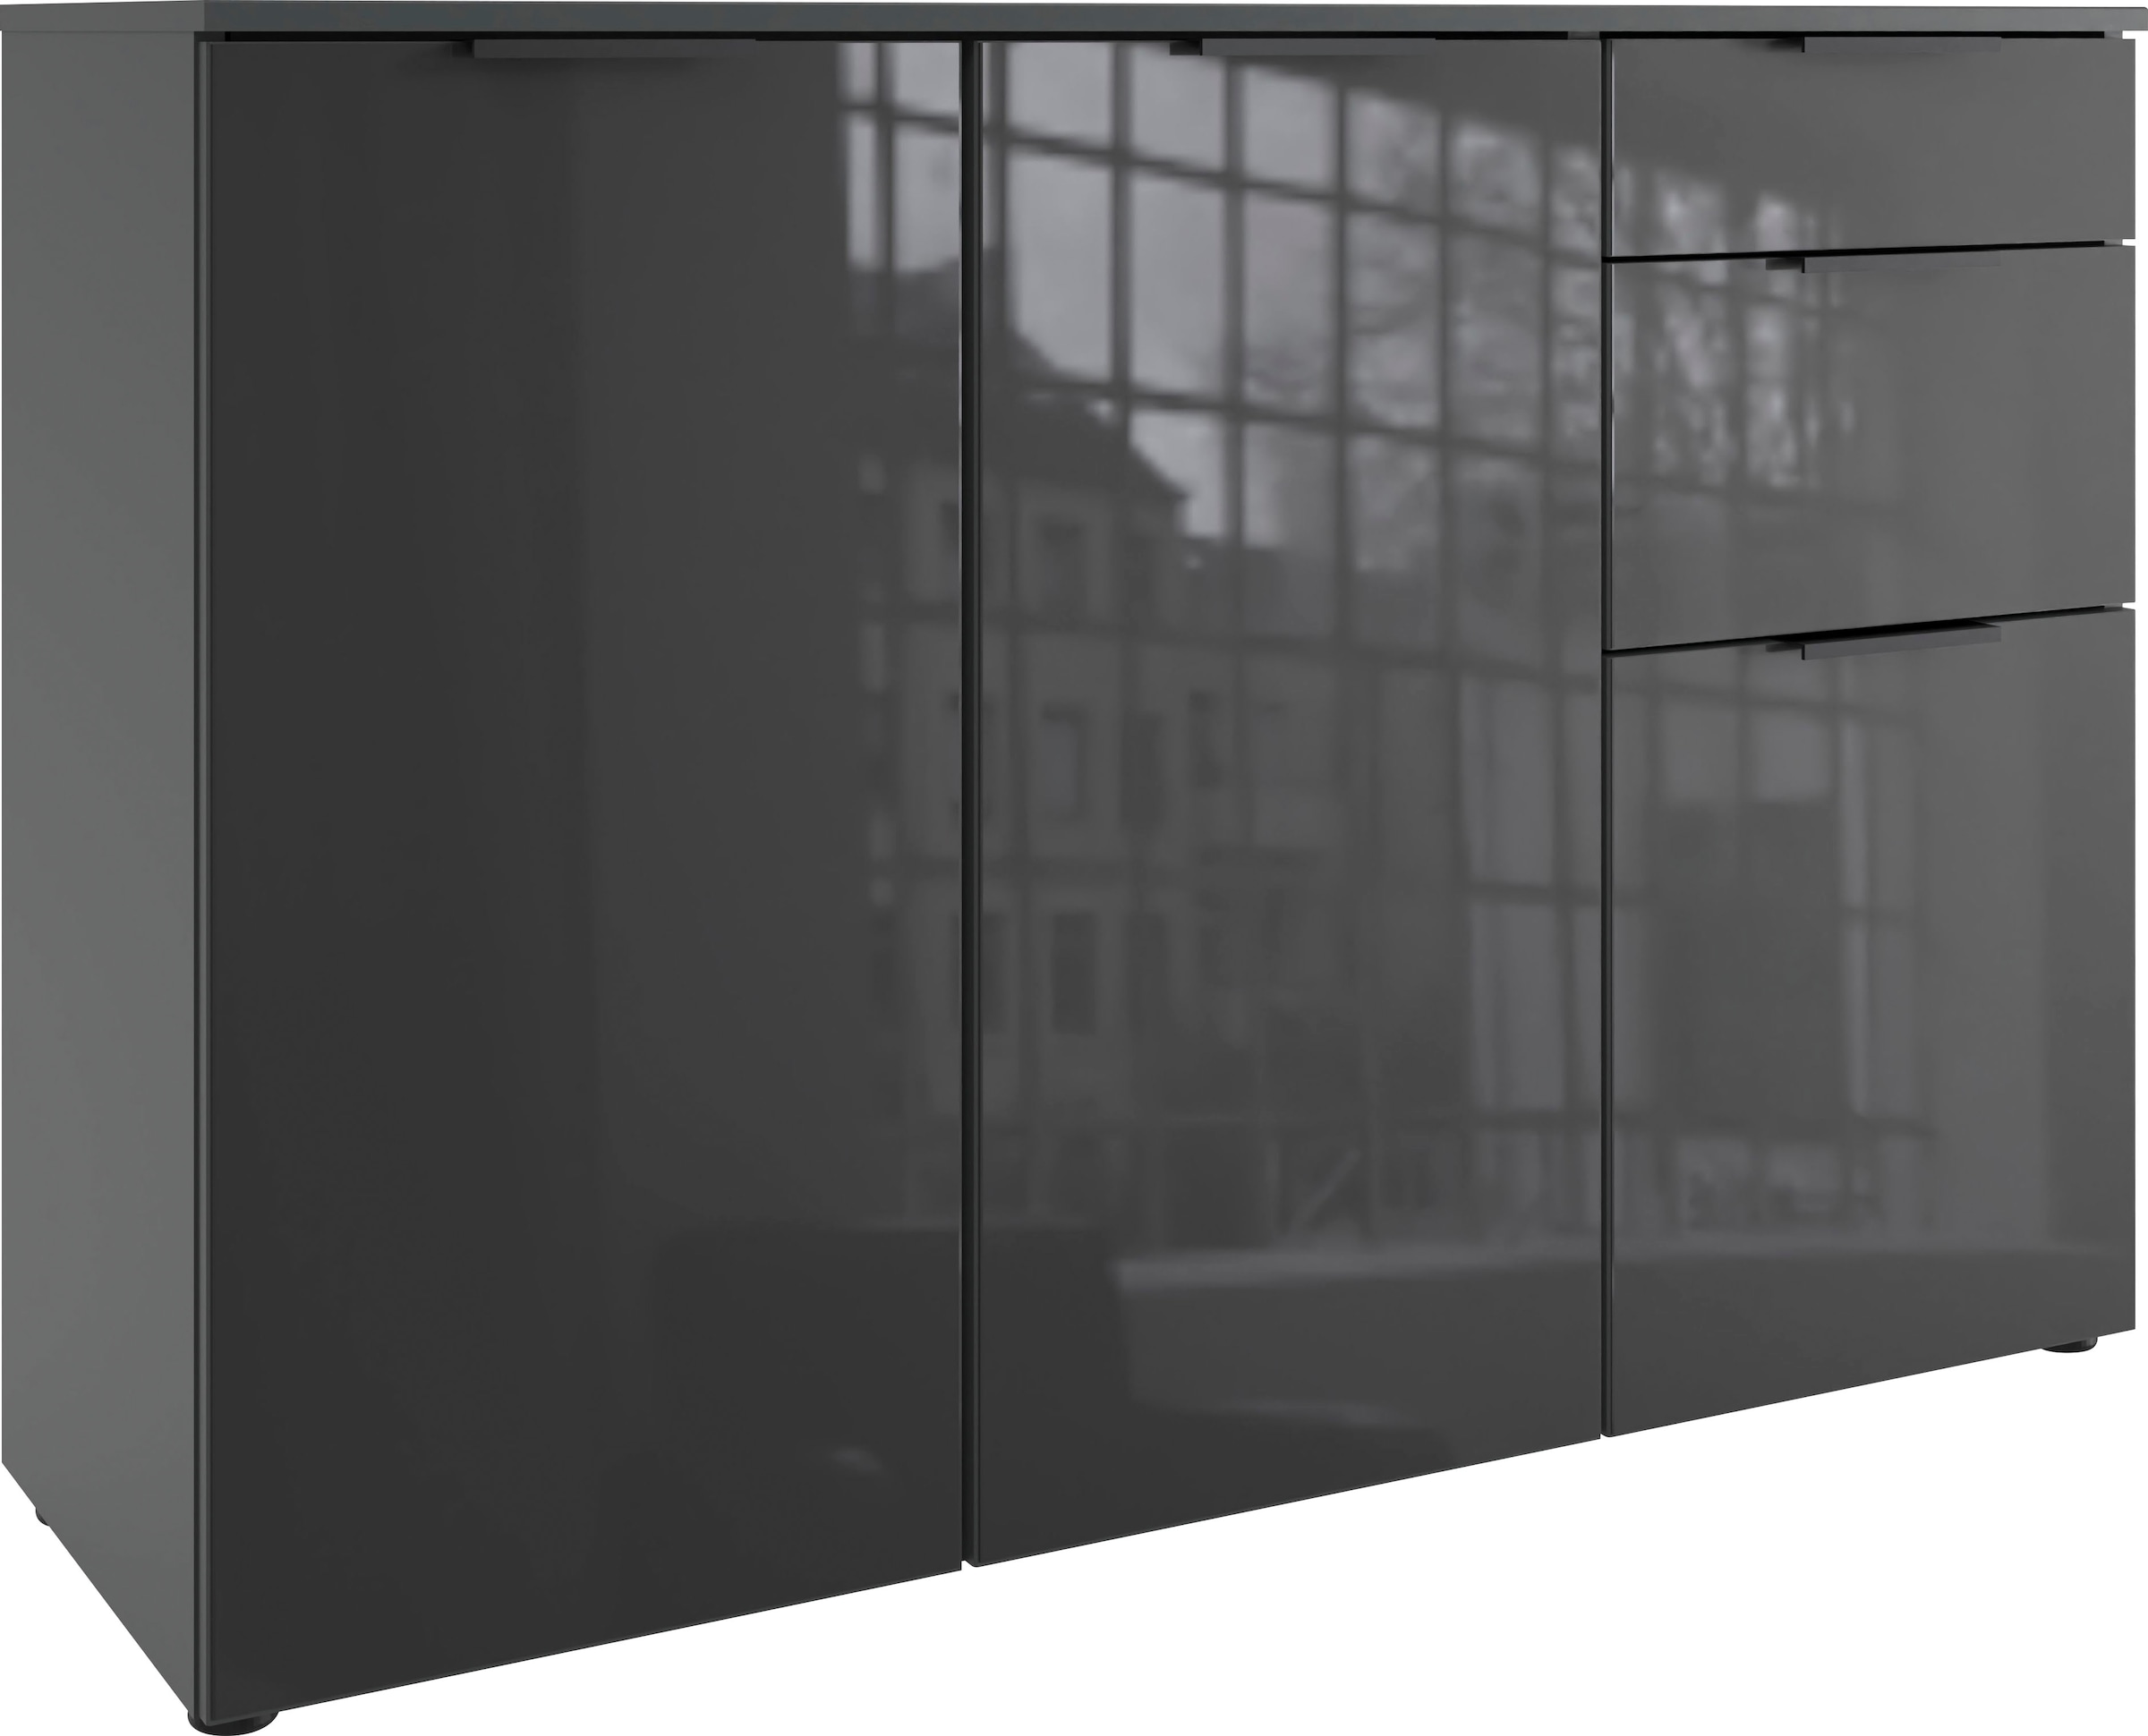 Wimex Kombikommode "Level36 black C by fresh to go", mit Glaselementen auf der Front, soft-close Funktion, 122cm breit